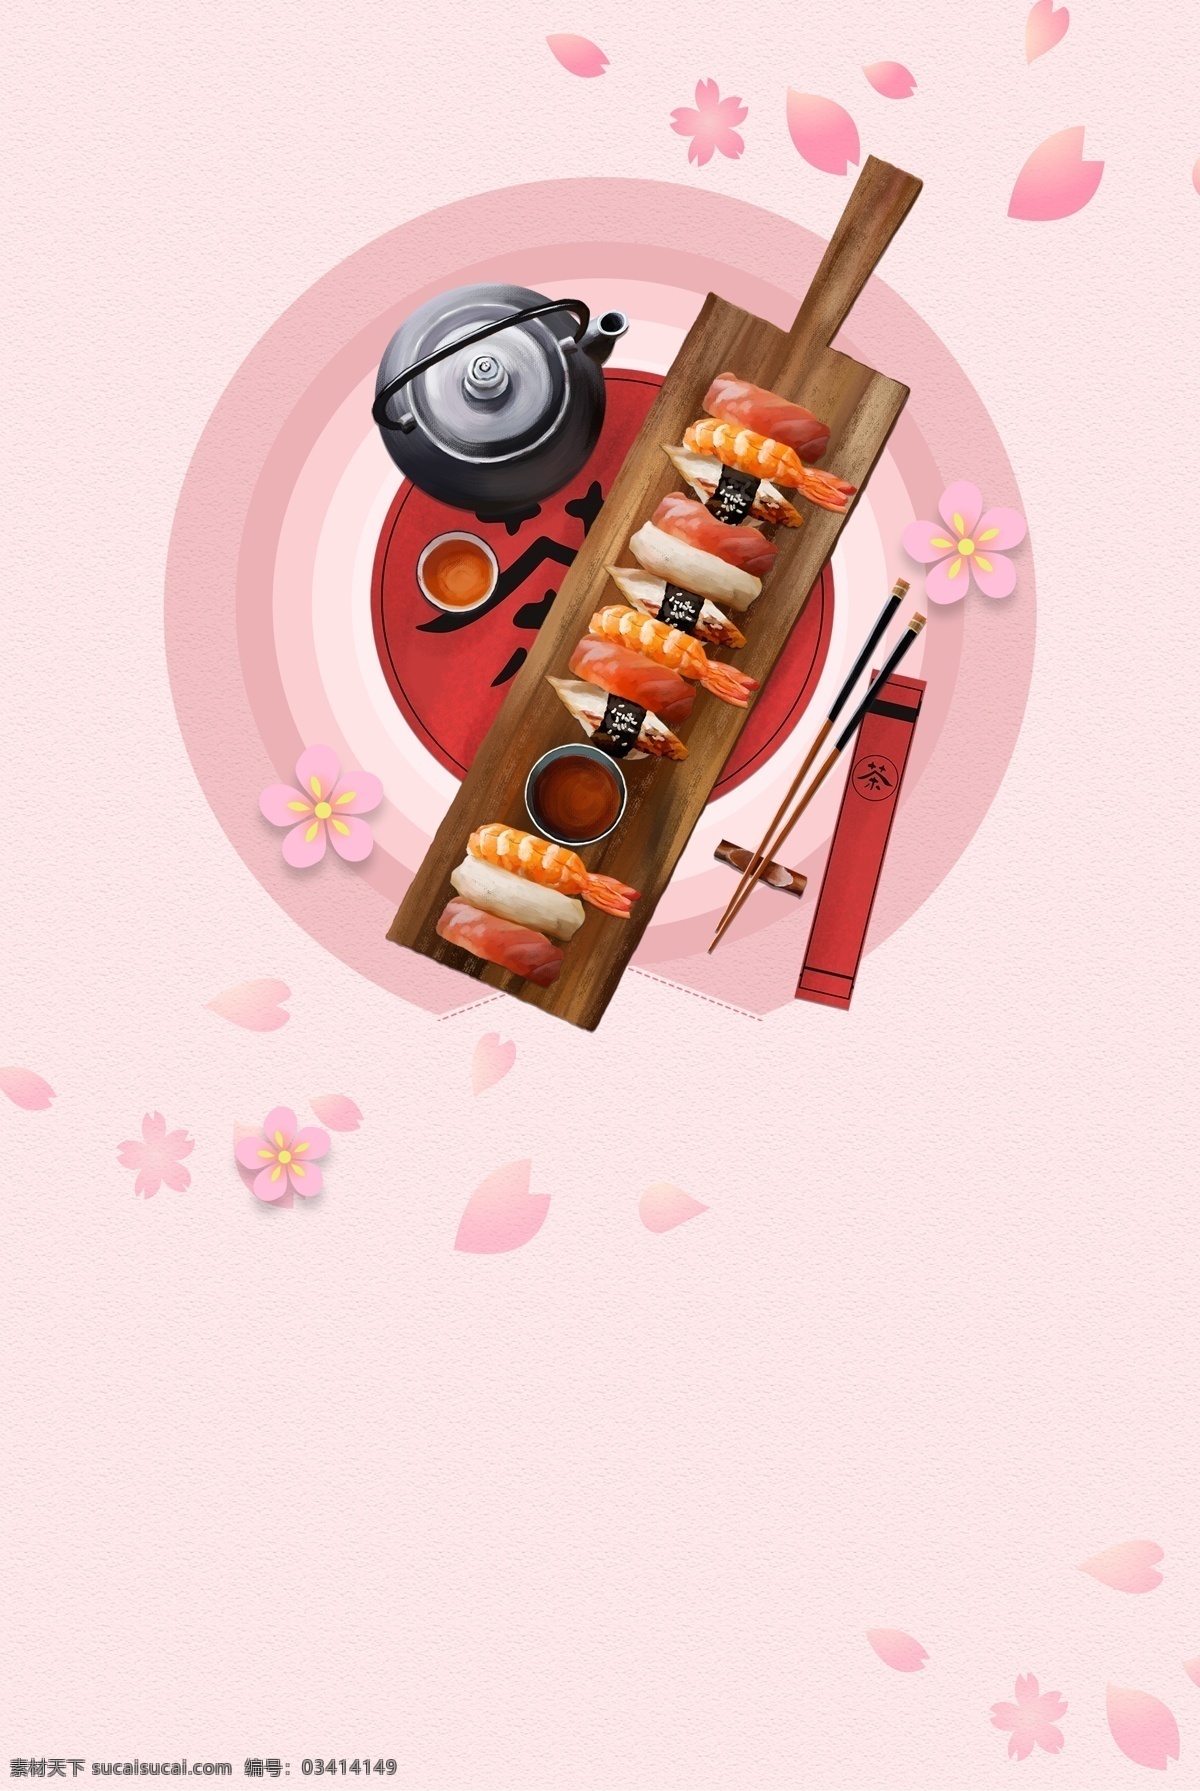 日本 寿司 料理 背景 海报 日本料理 伙食 樱花 刺身 日系